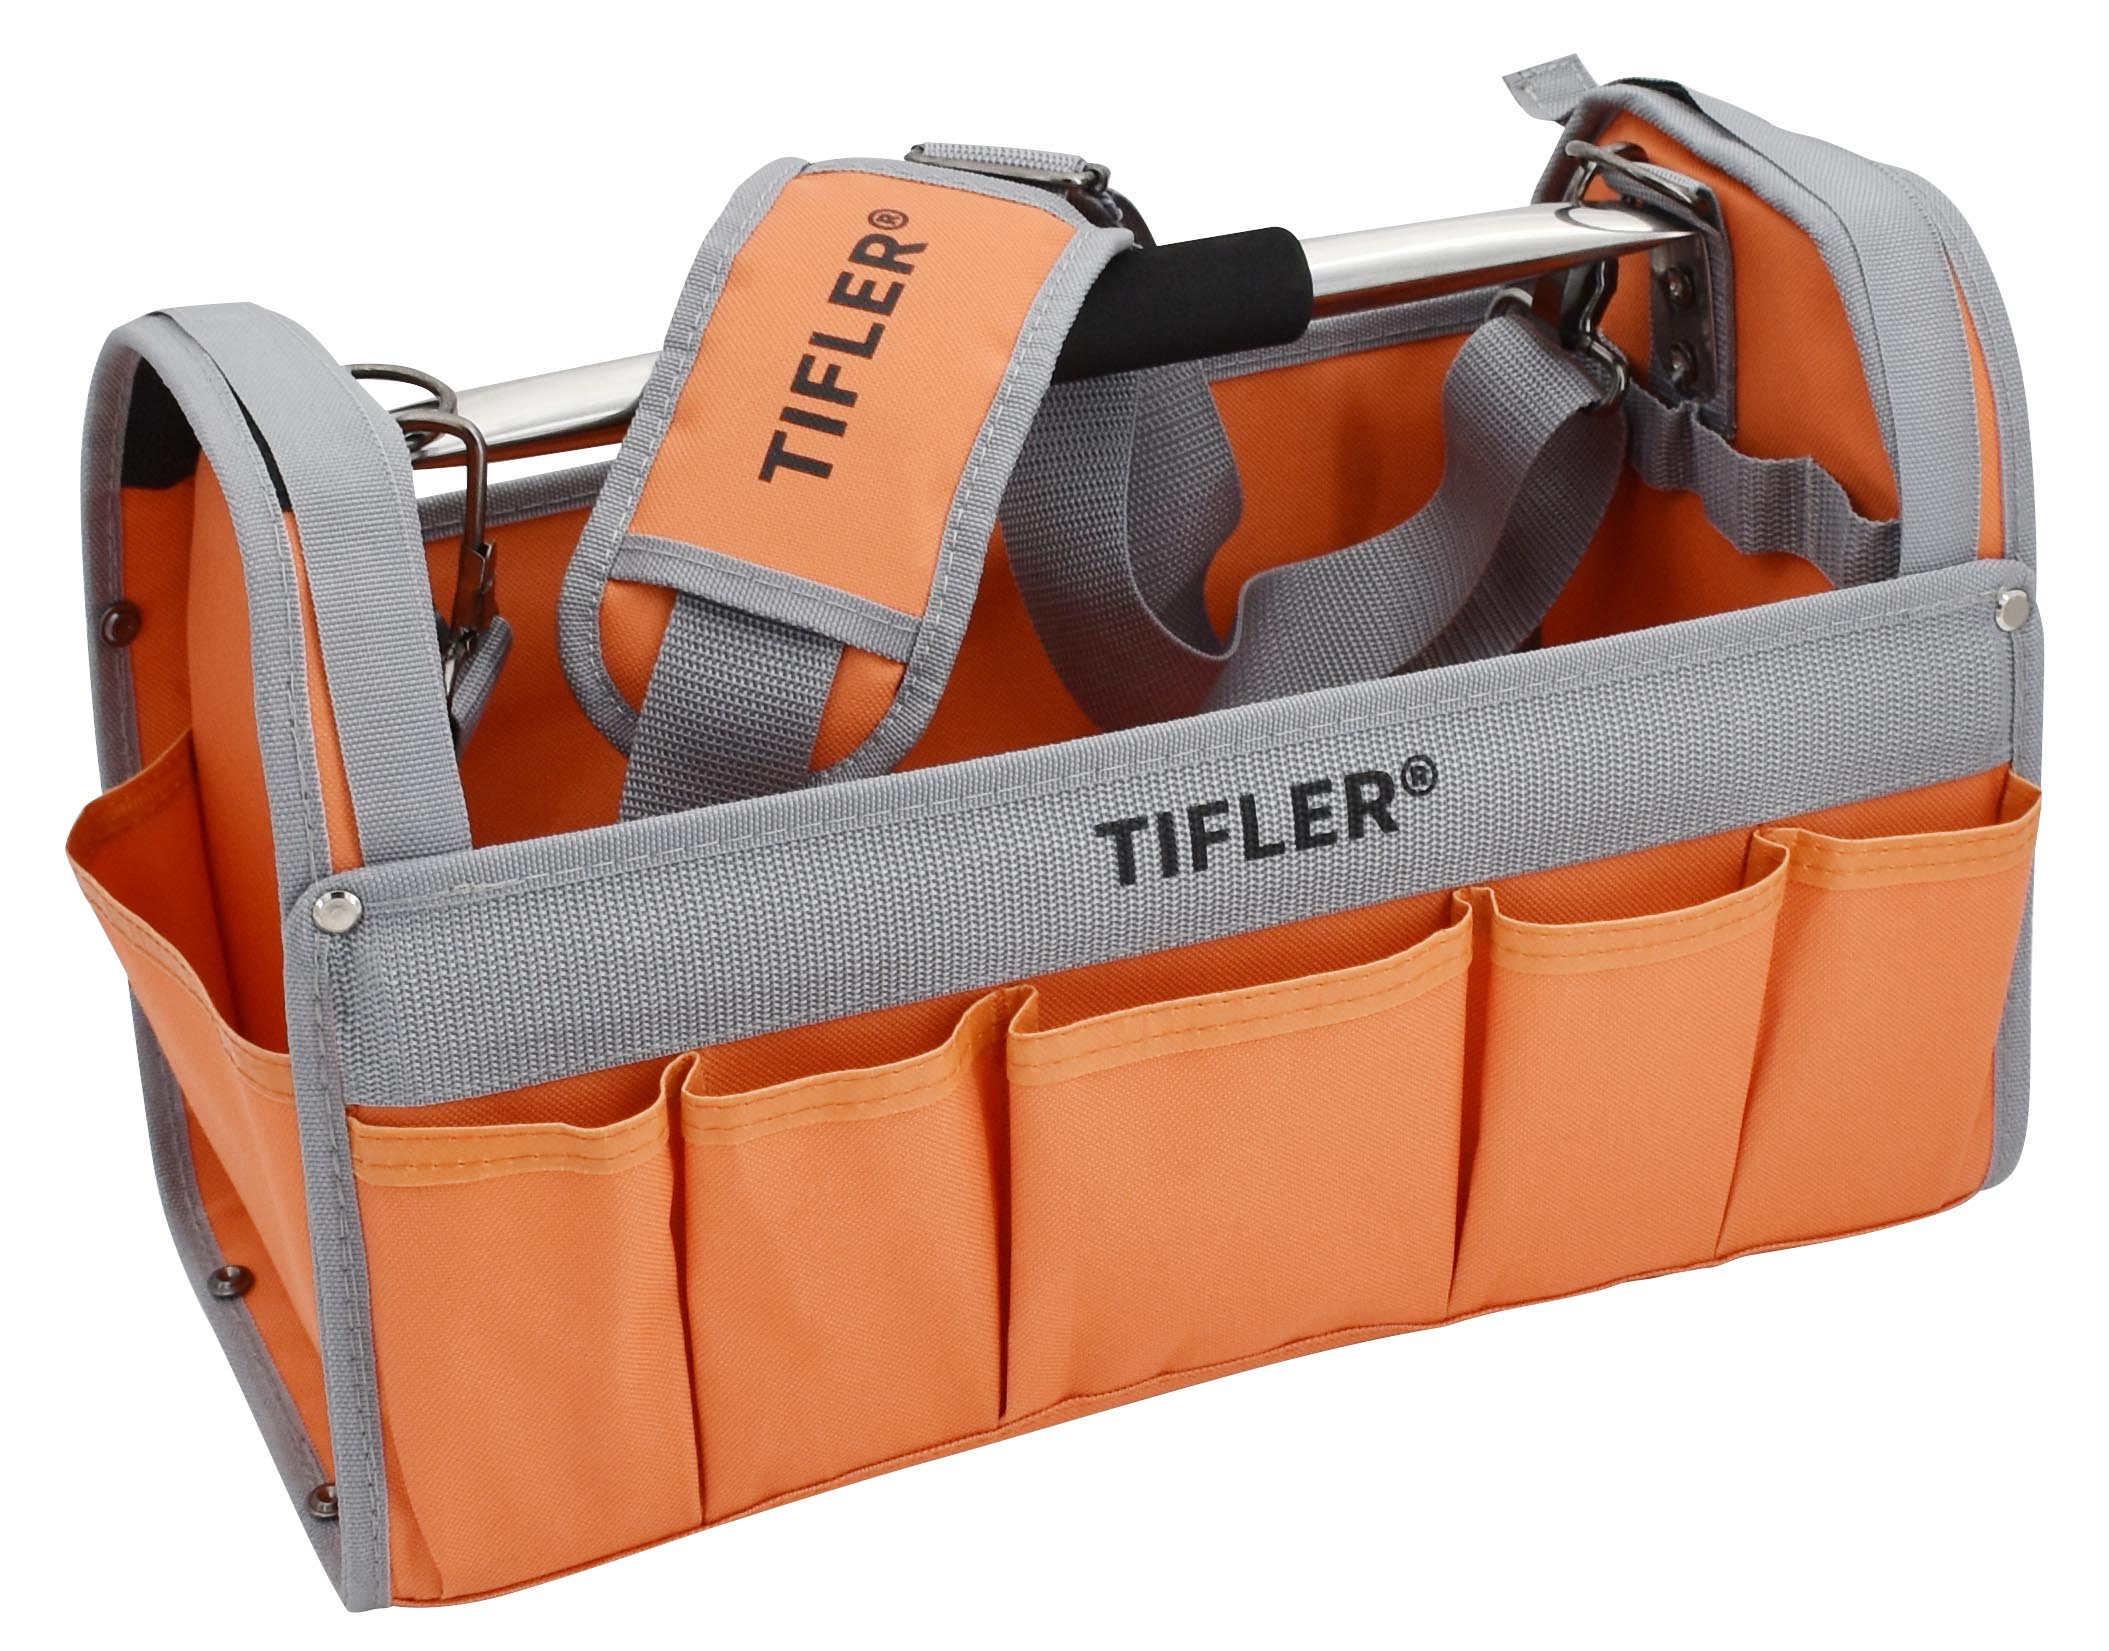 Tifler Werkzeugtrage mit Schultergurt.